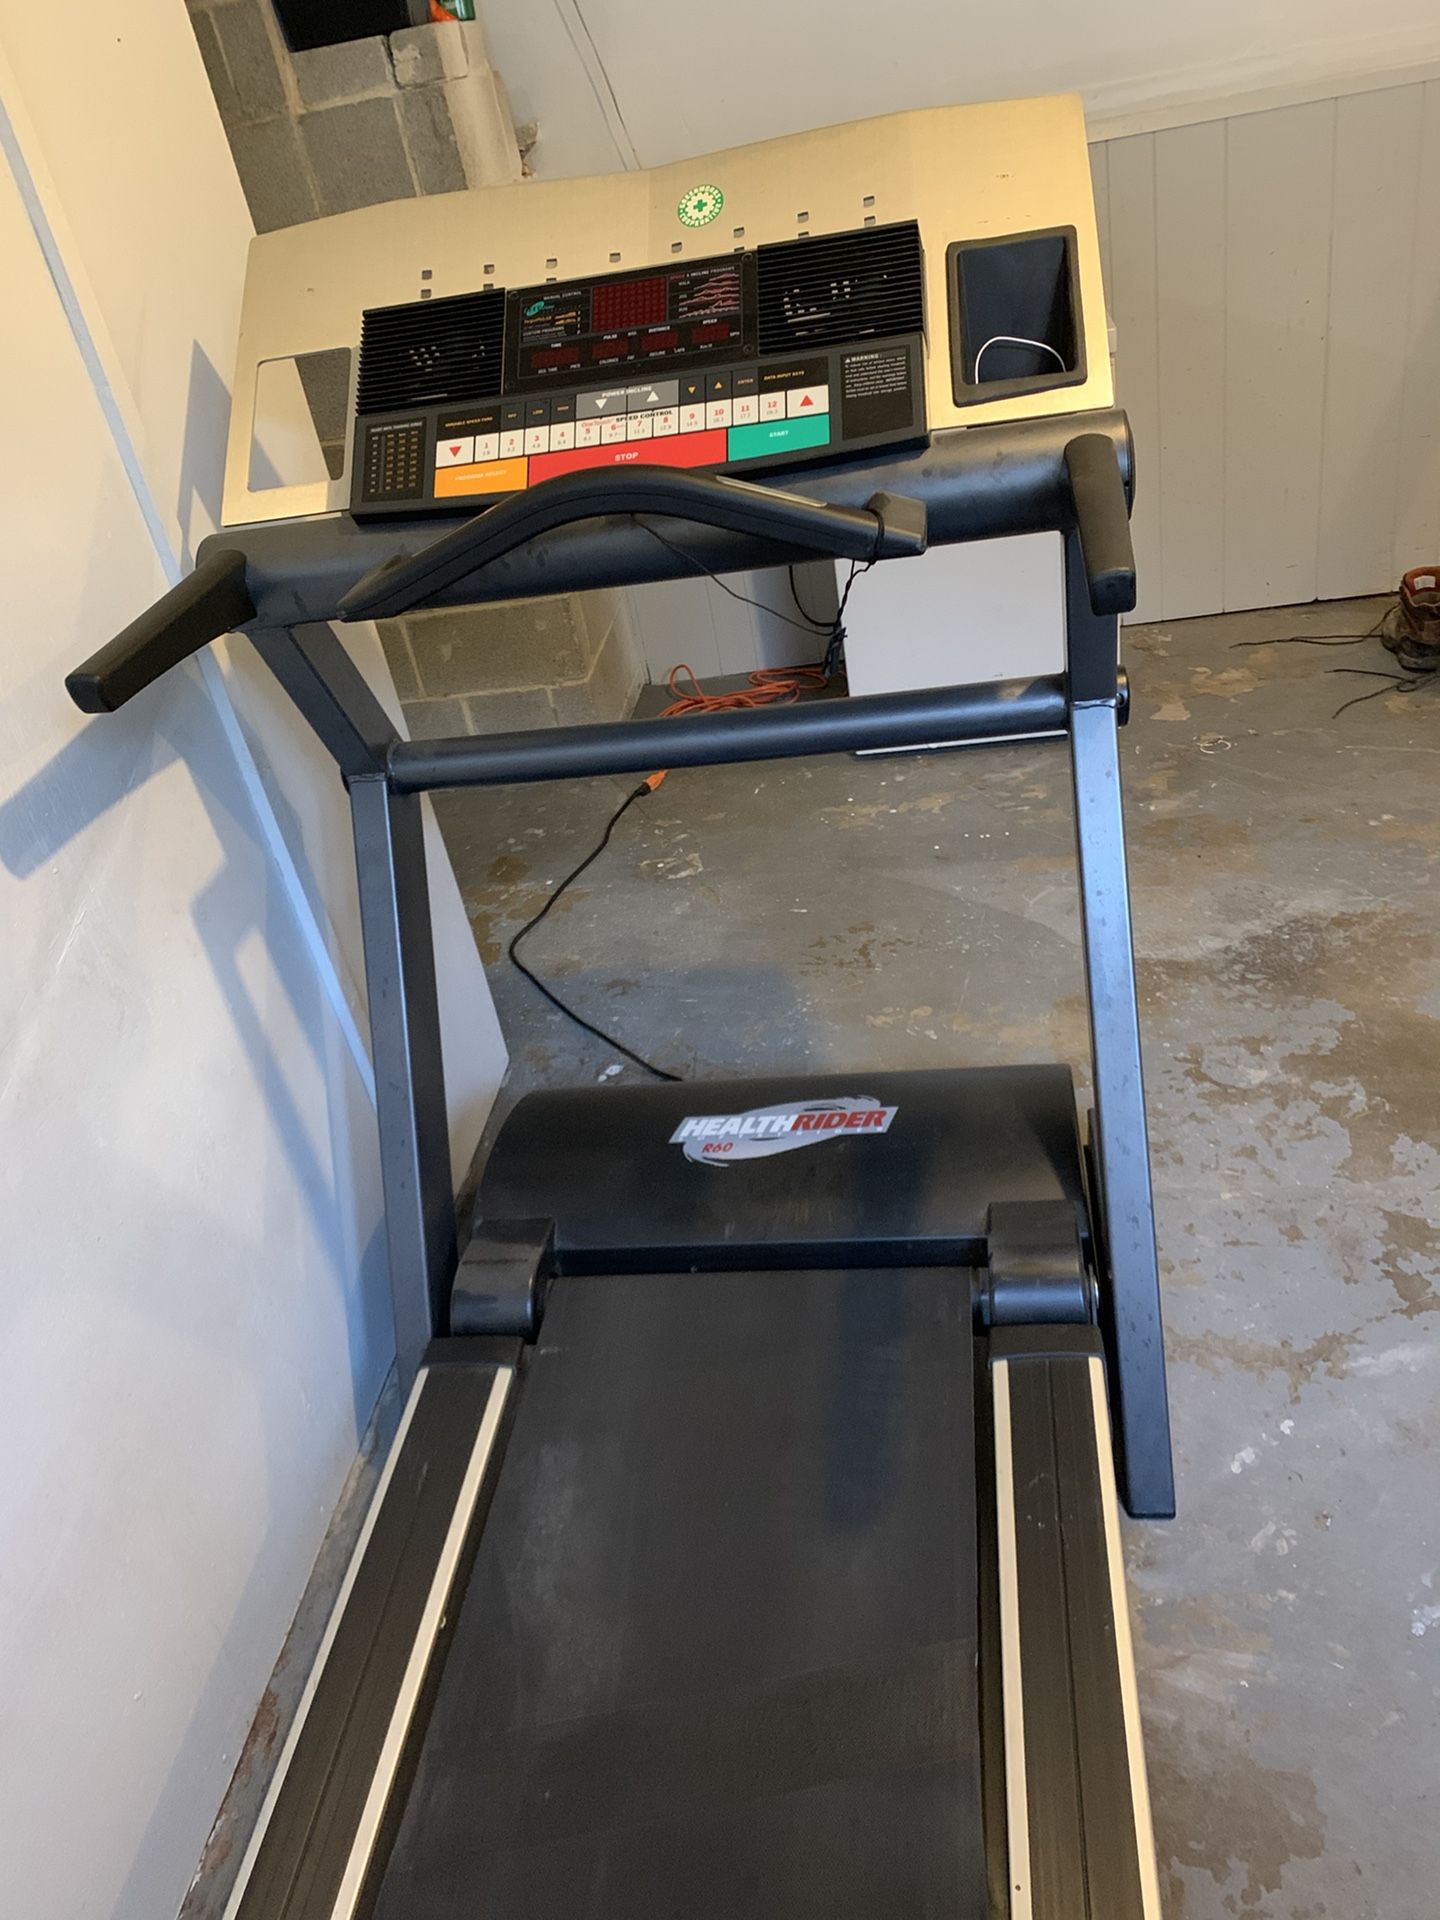 Treadmill, Health Rider